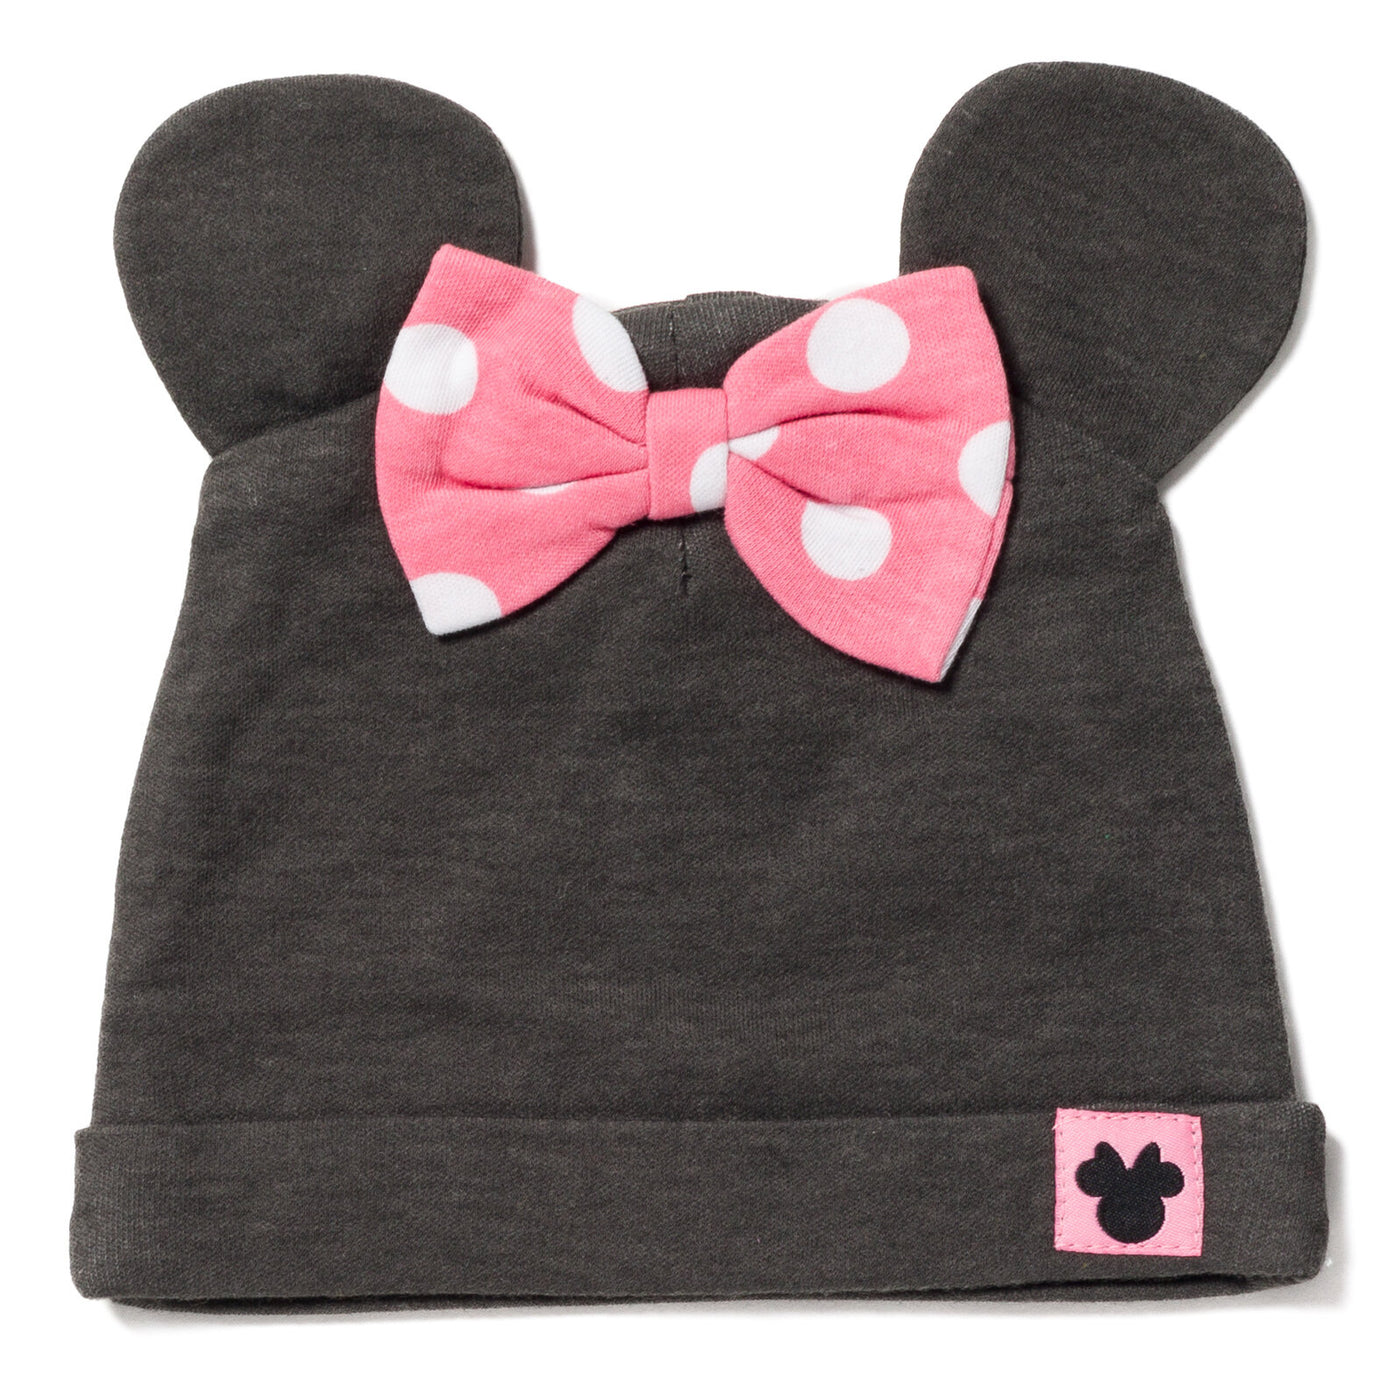 Minnie Mouse 3 Piece Outfit Set: Mix N' Match Bodysuit Pants Hat